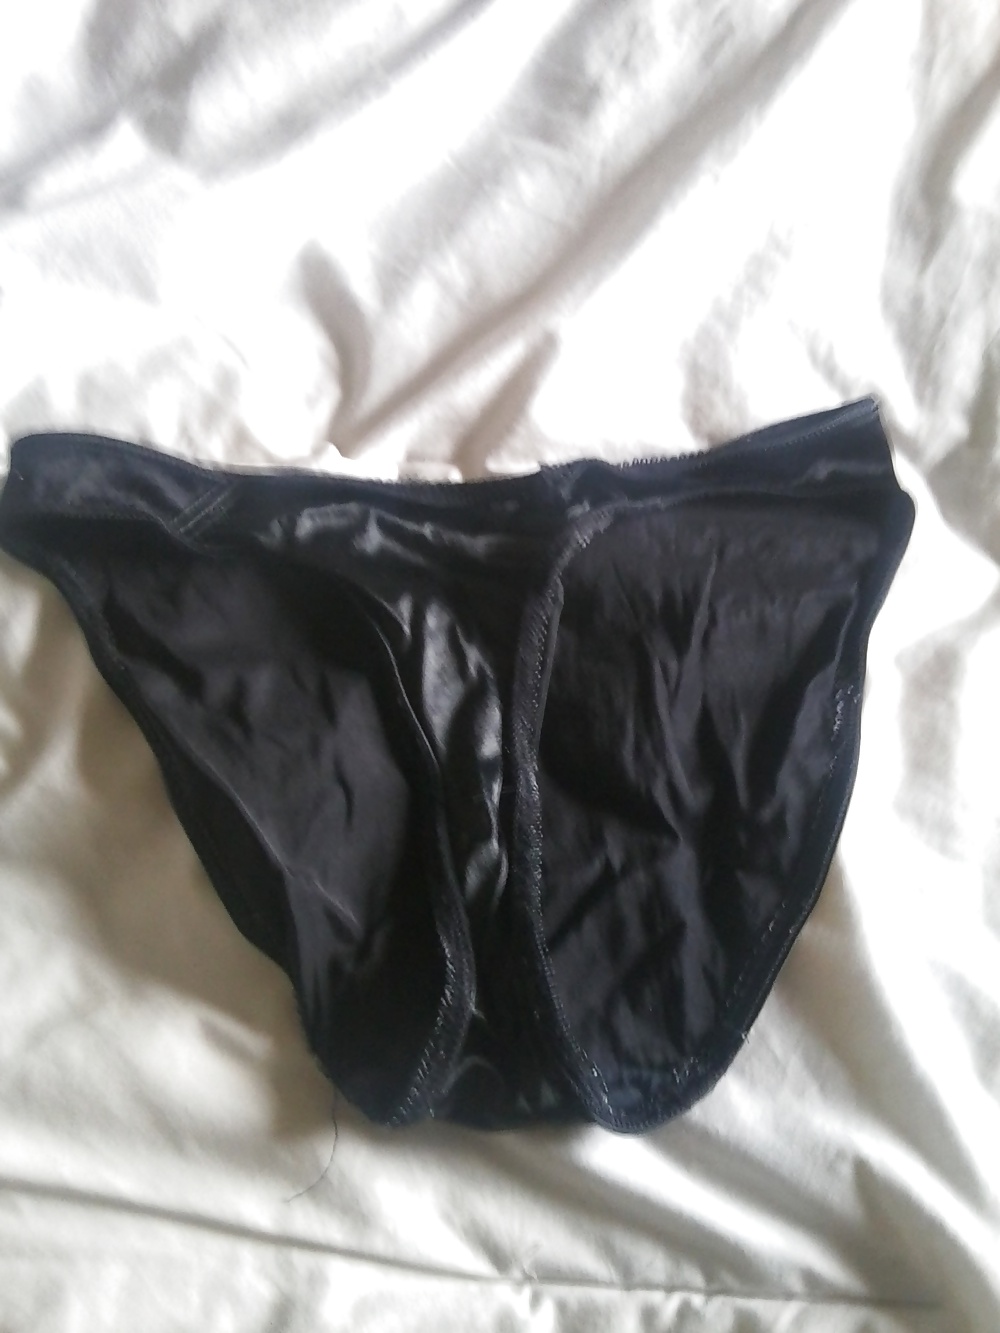 My 57yr old GF's panties #19445390